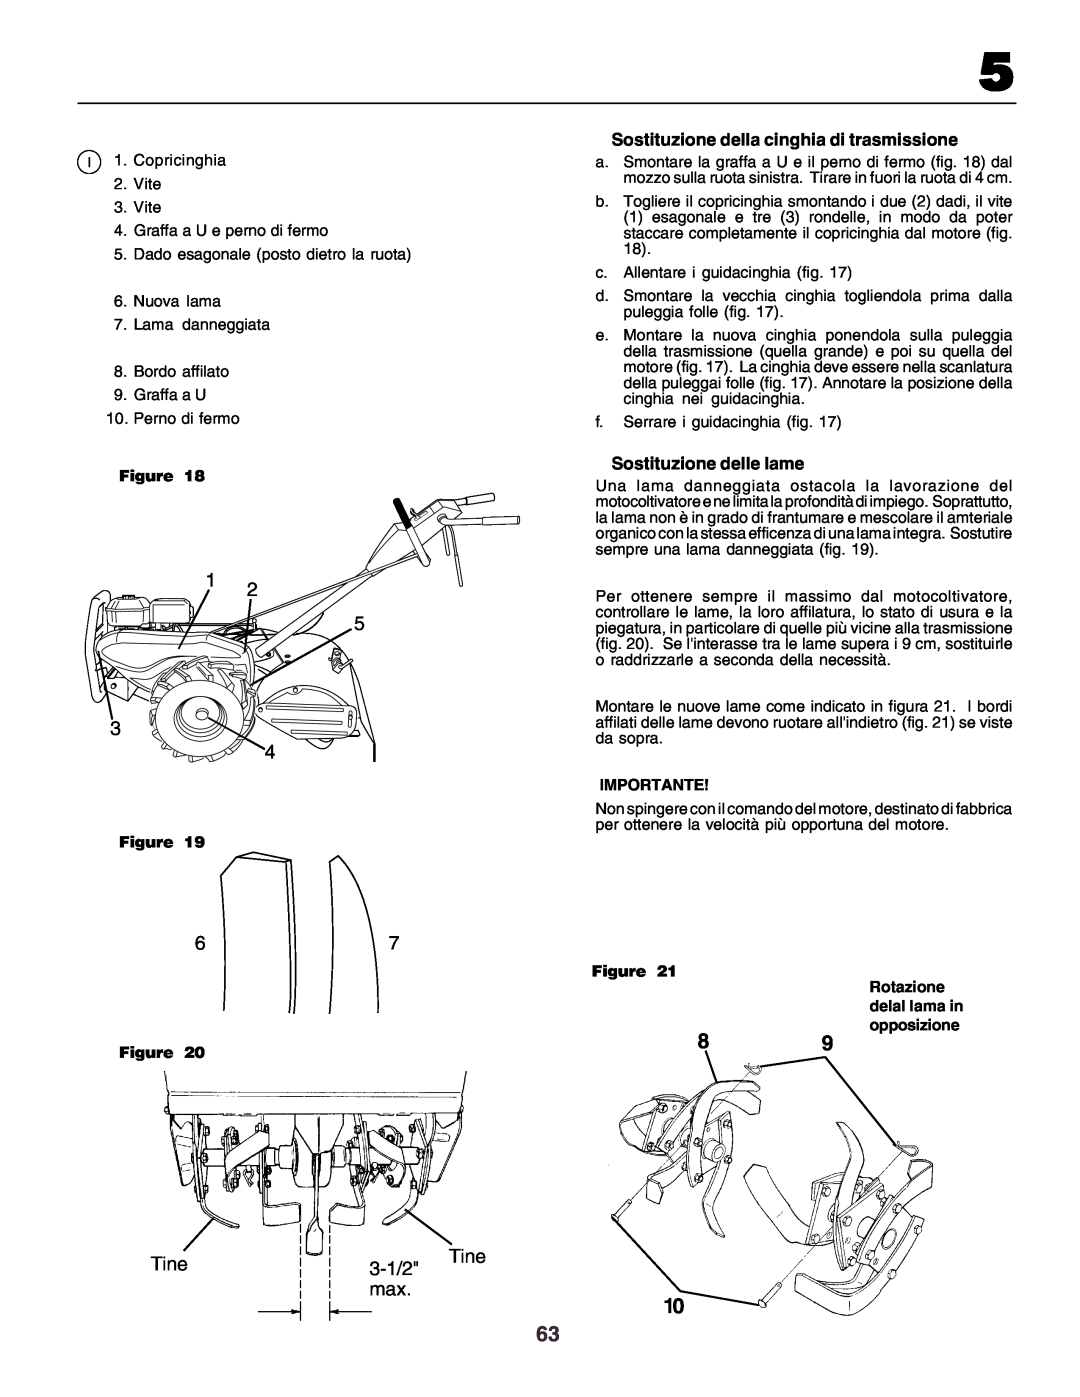 Husqvarna crt51 instruction manual Tine, 3-1/2, Importante, Figure Rotazione delal lama in opposizione 